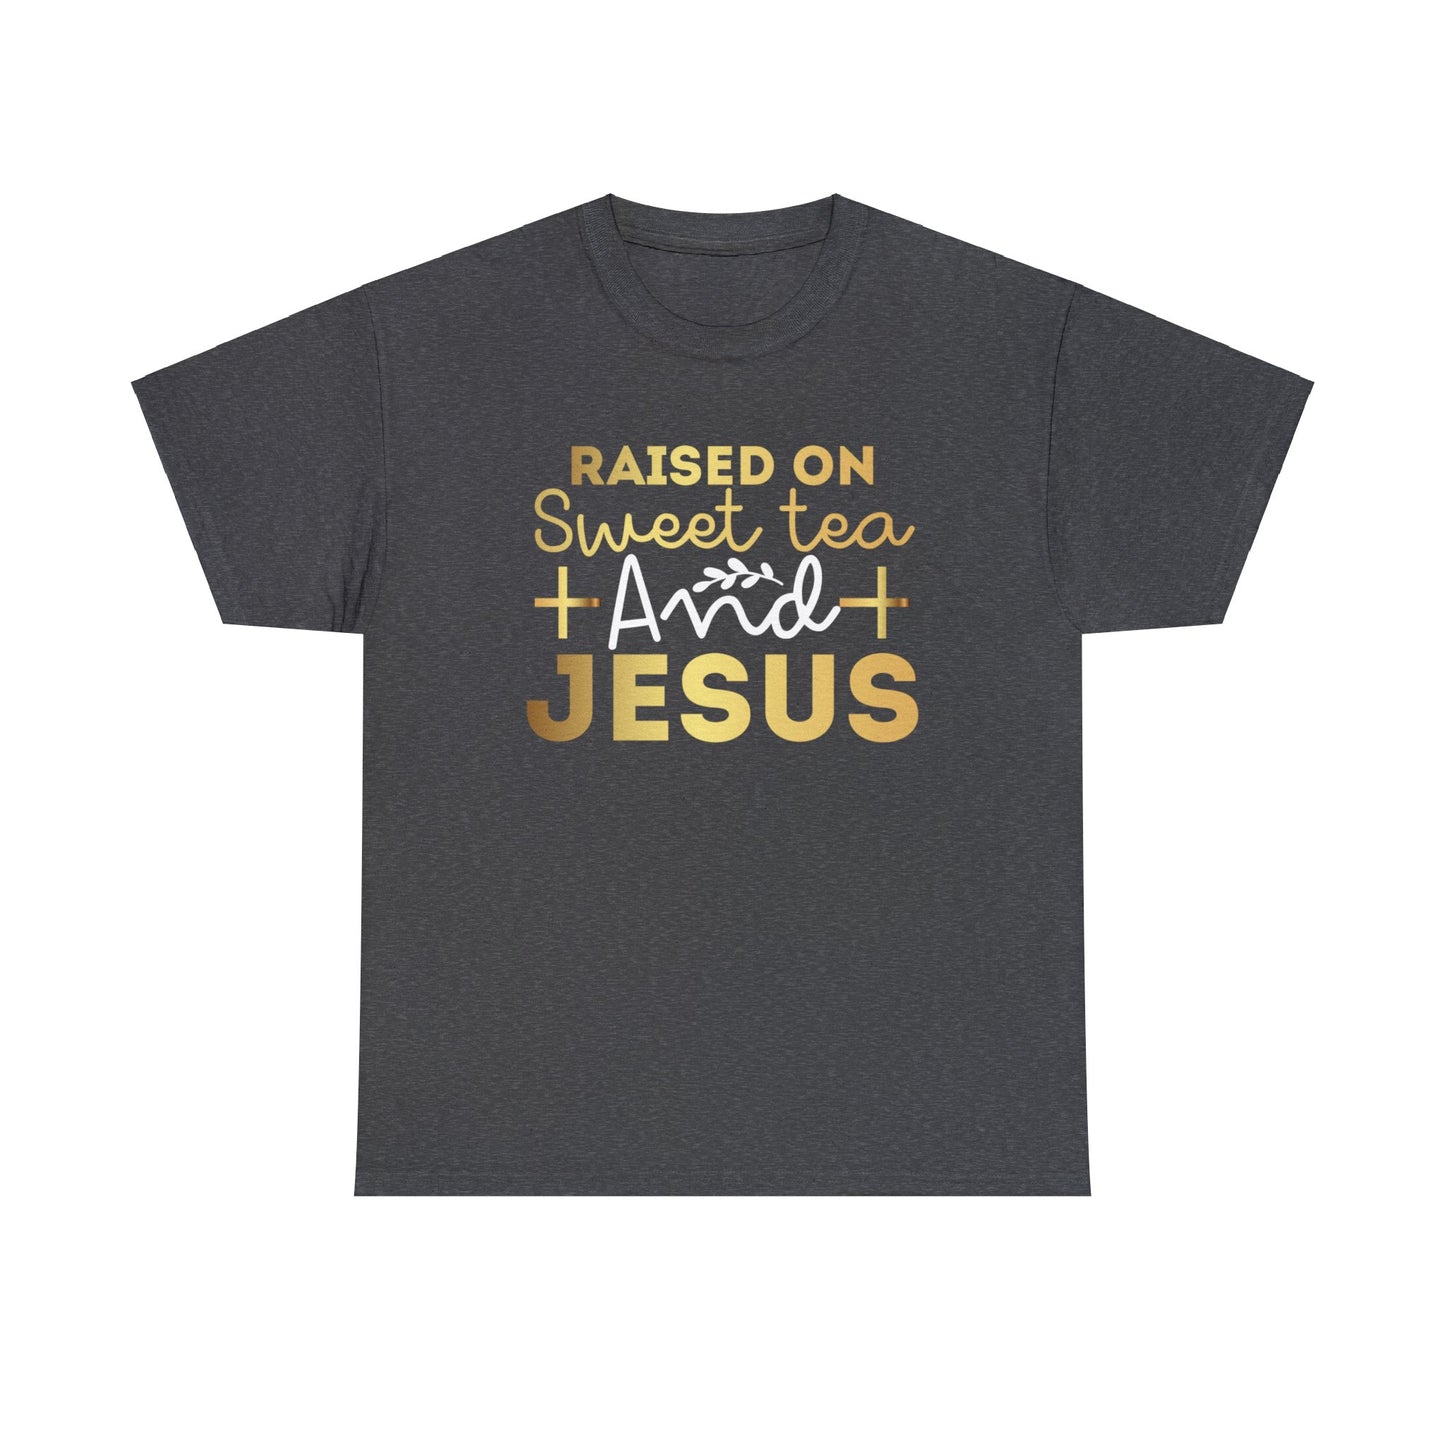 Raised On Sweet Tea and Jesus Shirt, Christian Shirt, Religious Shirt, Faith Tee (Faith-49)